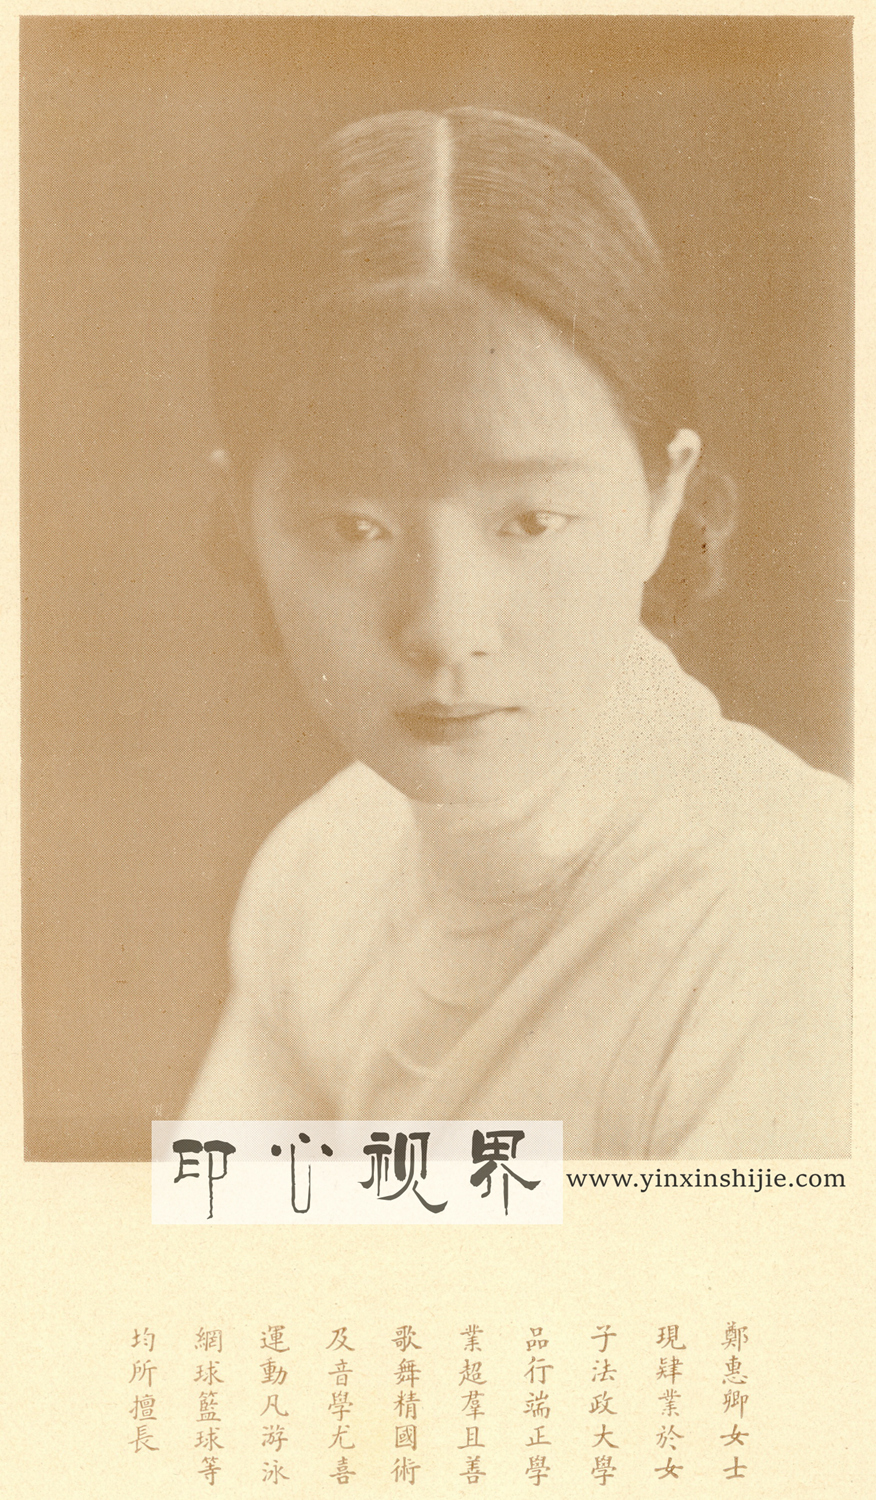 ＂长袖善舞好运动＂的郑惠卿女士--1930年《闺秀影集》